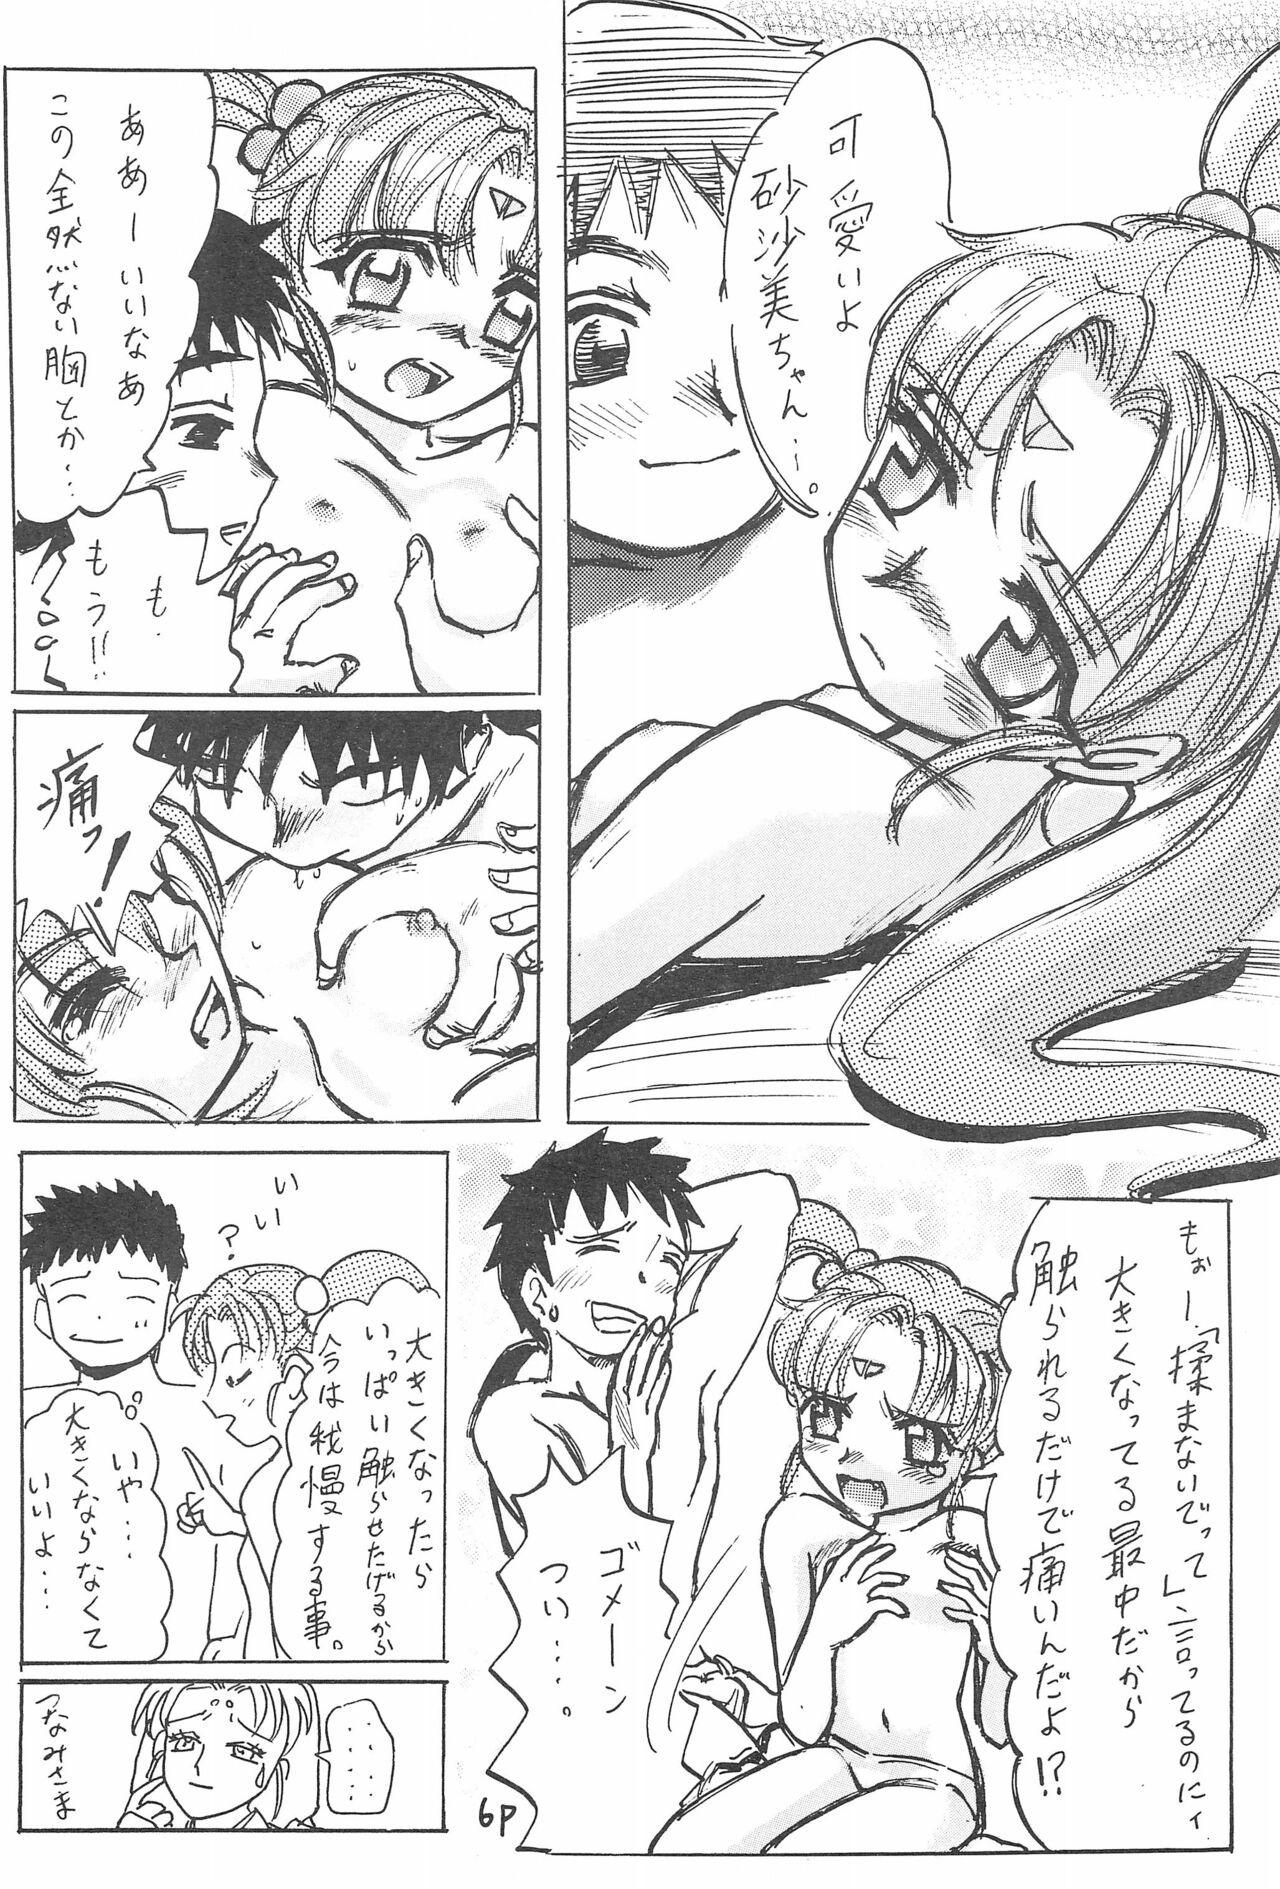 Alt Aniome Imouto Ou 1 - Cardcaptor sakura Tenchi muyo From - Page 10